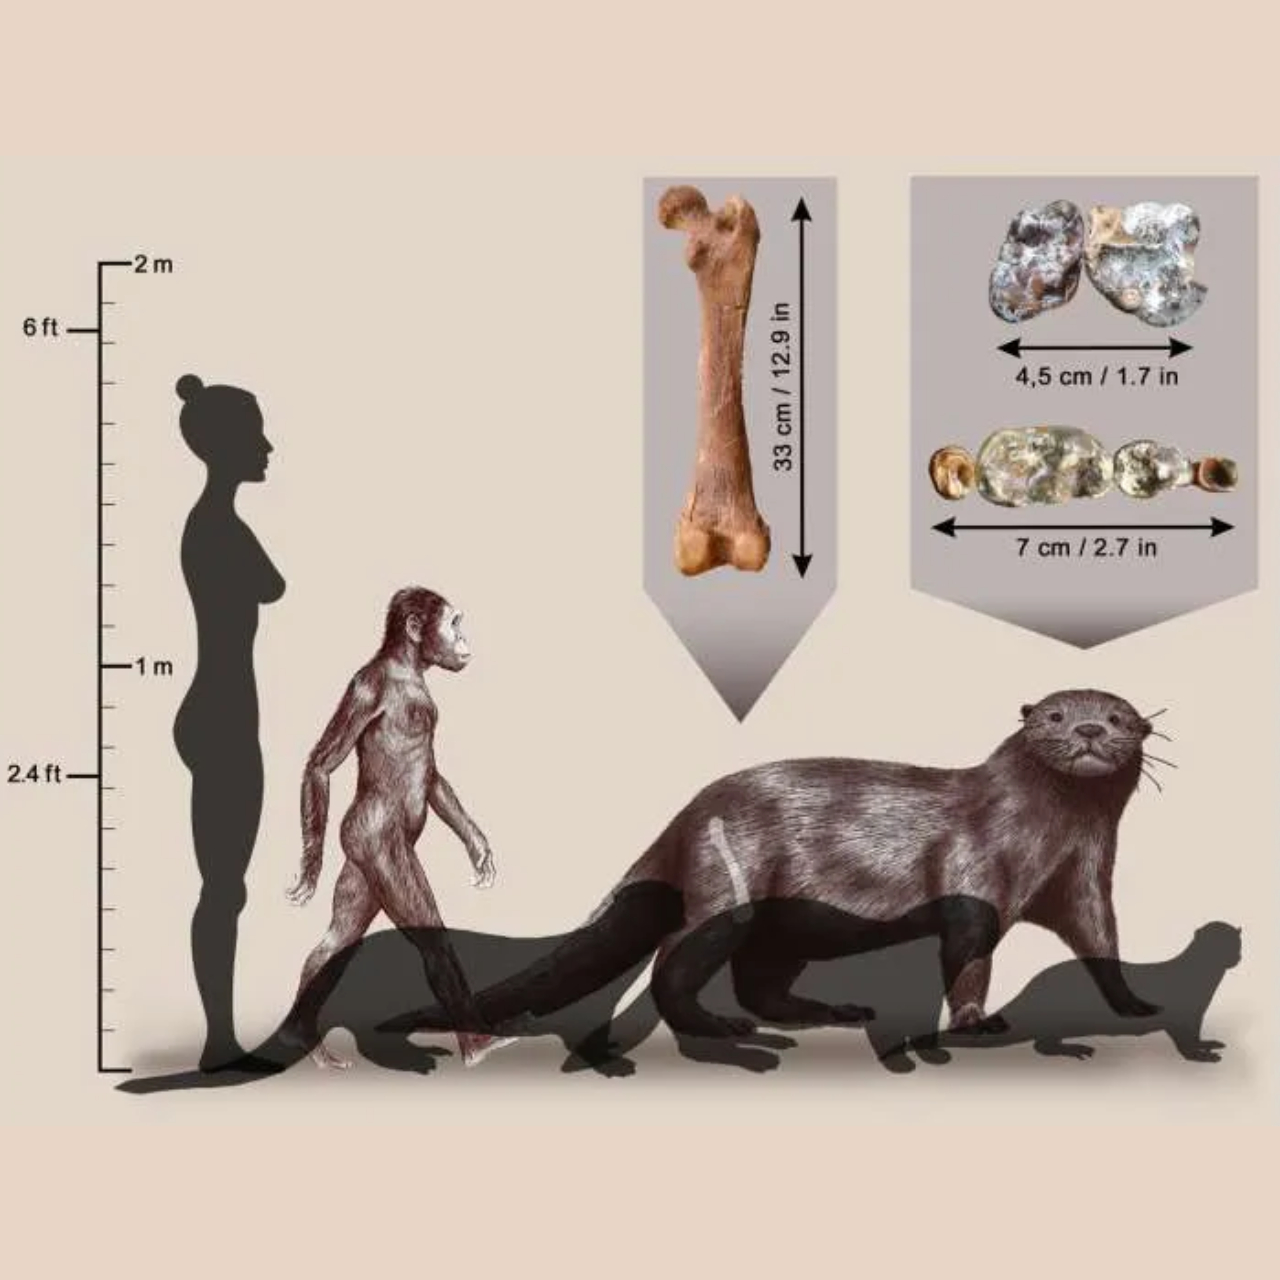 Imagem esquematizada comparando tamanho de lontra descoberta com humanos atuais, primitivos e lontras modernas